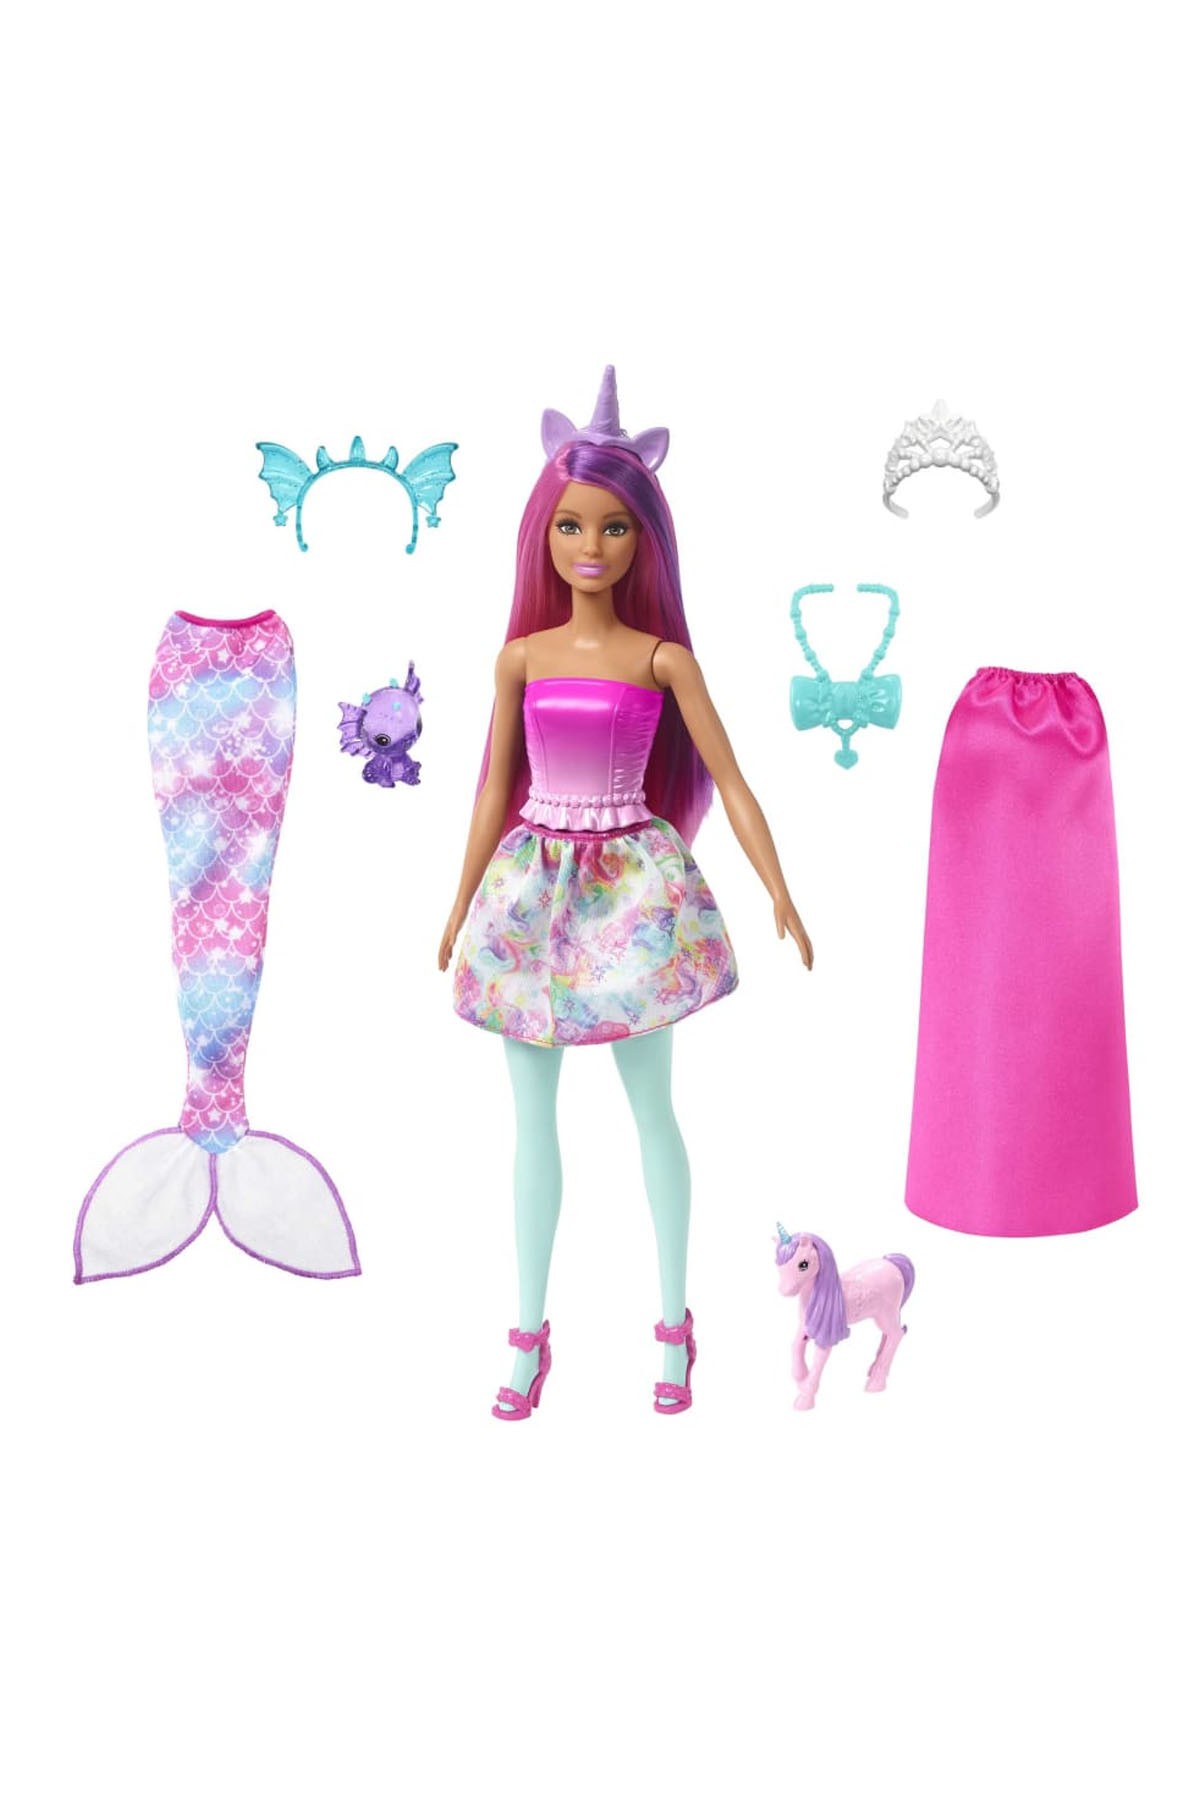 Barbie Dreamtopia Prenses Bebek ve Aksesuarları Oyun Setleri HLC28